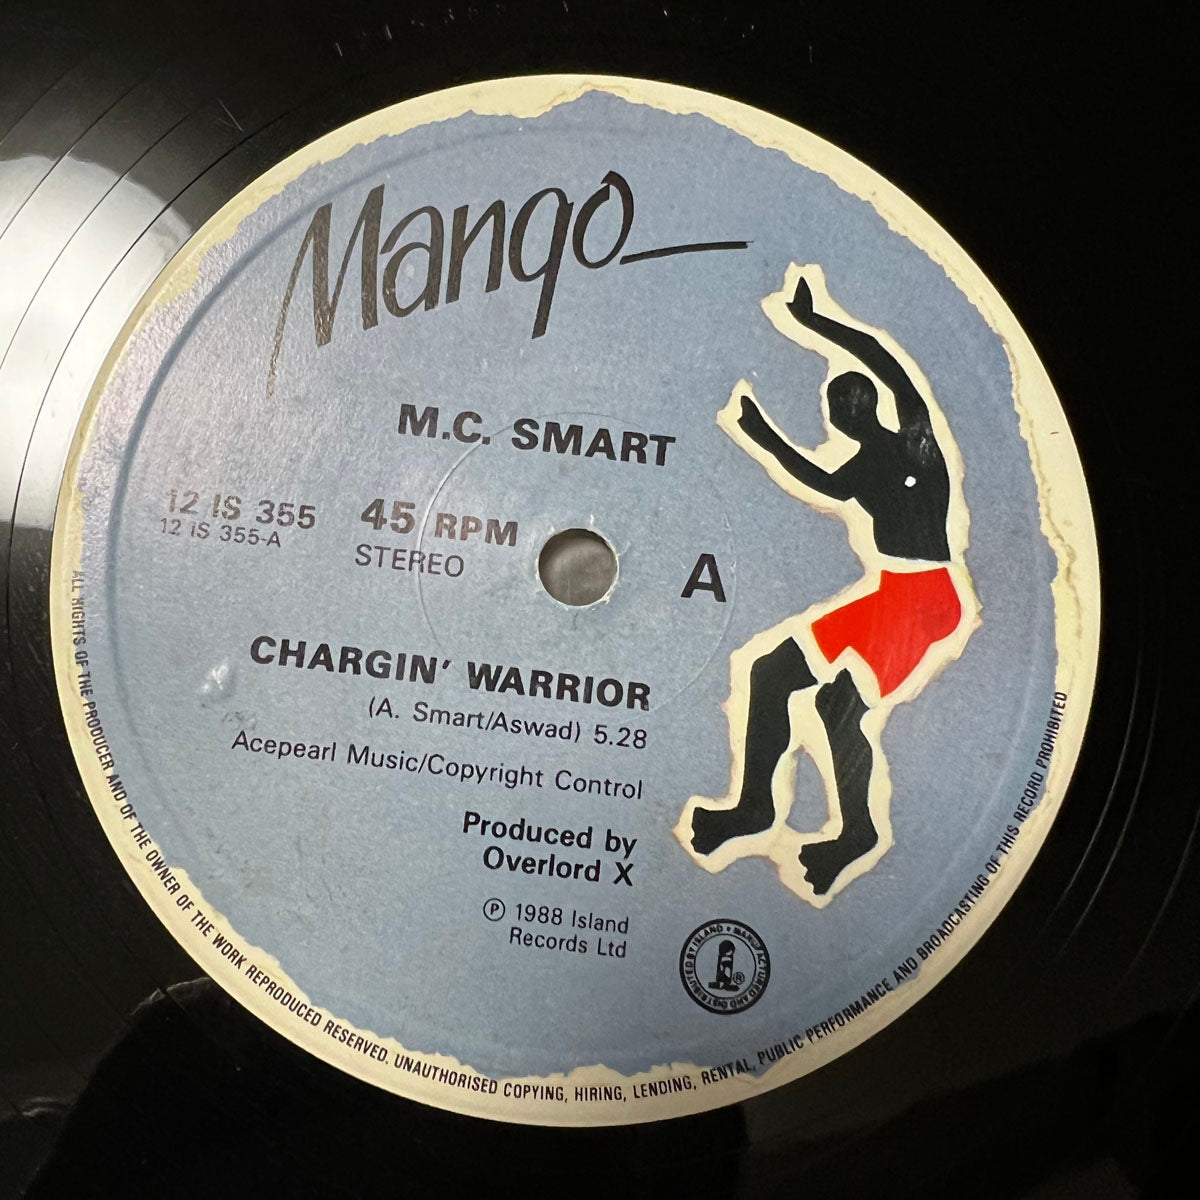 M.C. SMART / CHARGIN WARRIOR